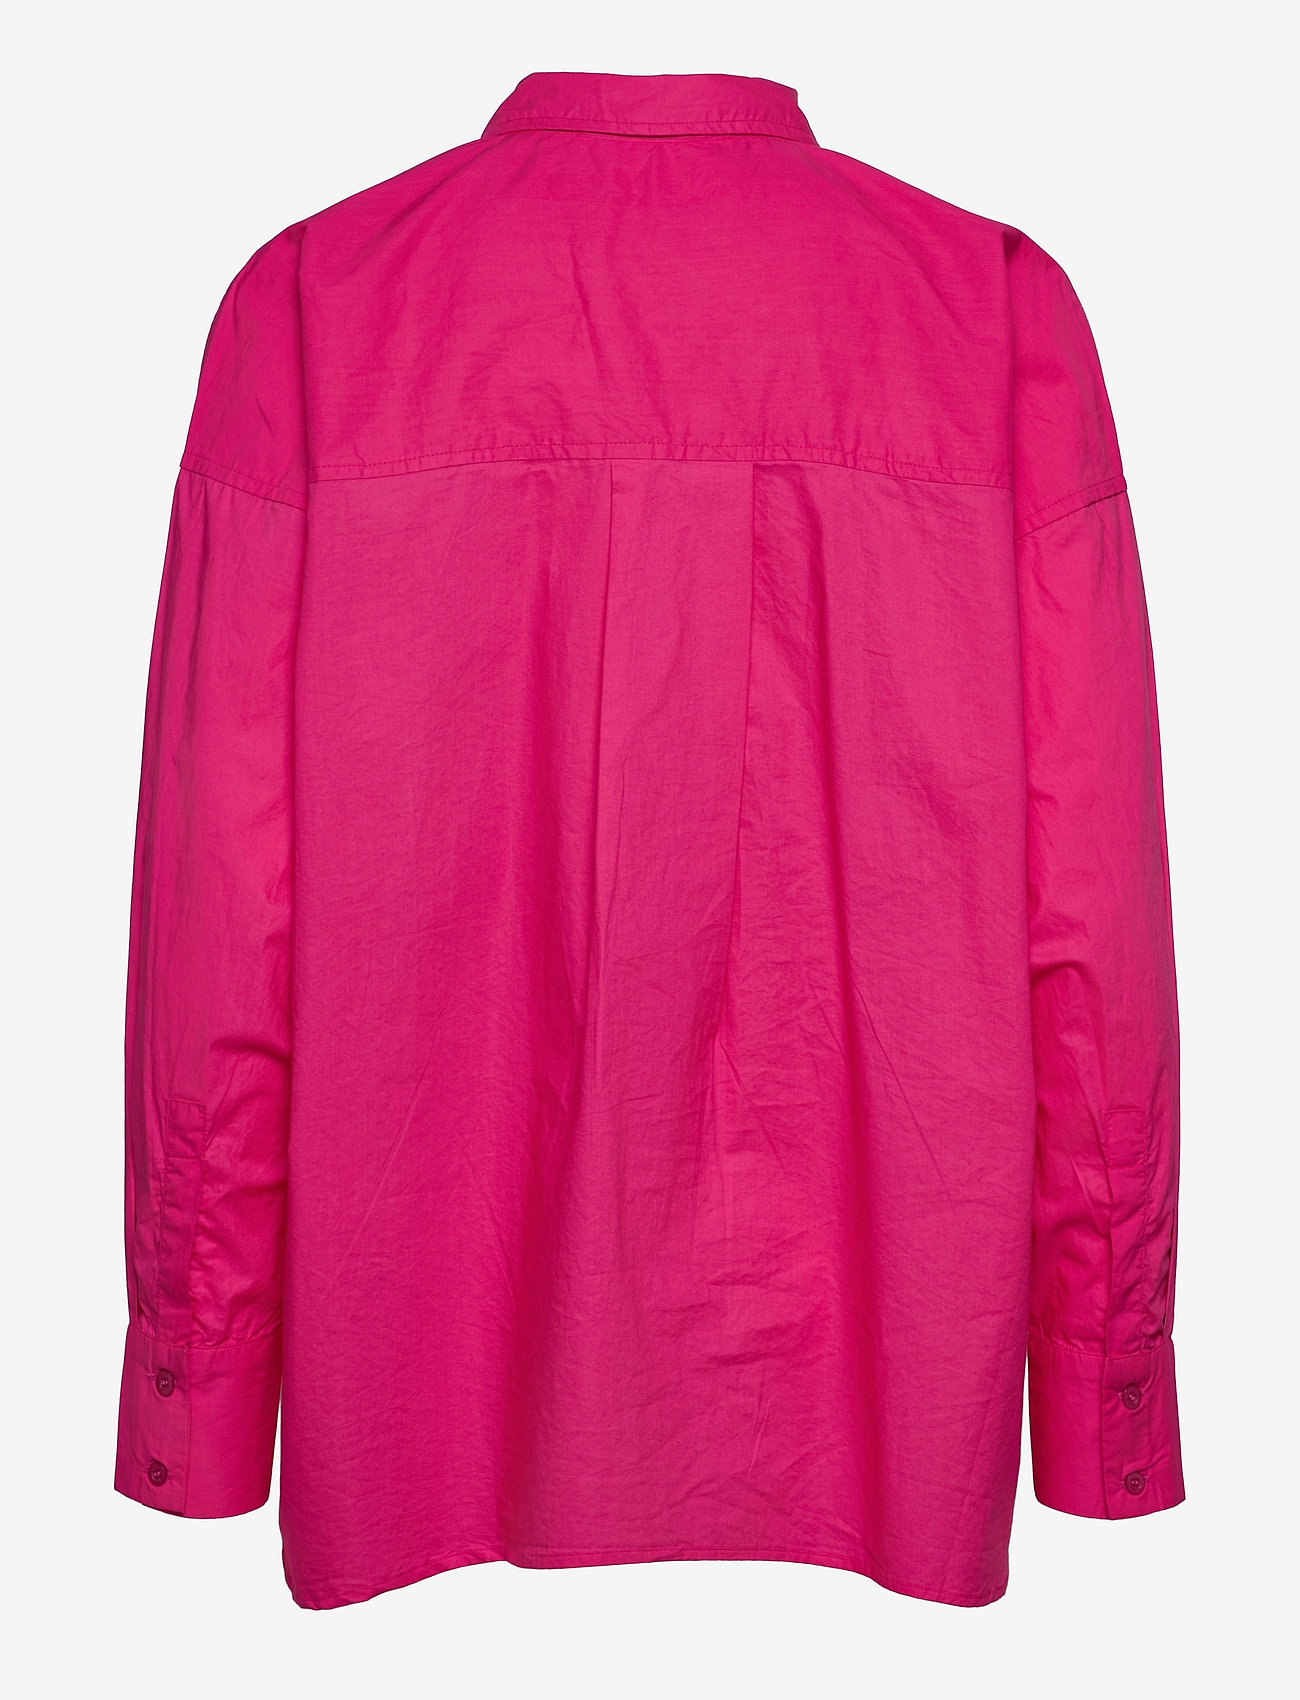 mbyM - M-Brisa - pitkähihaiset paidat - hot pink - 1